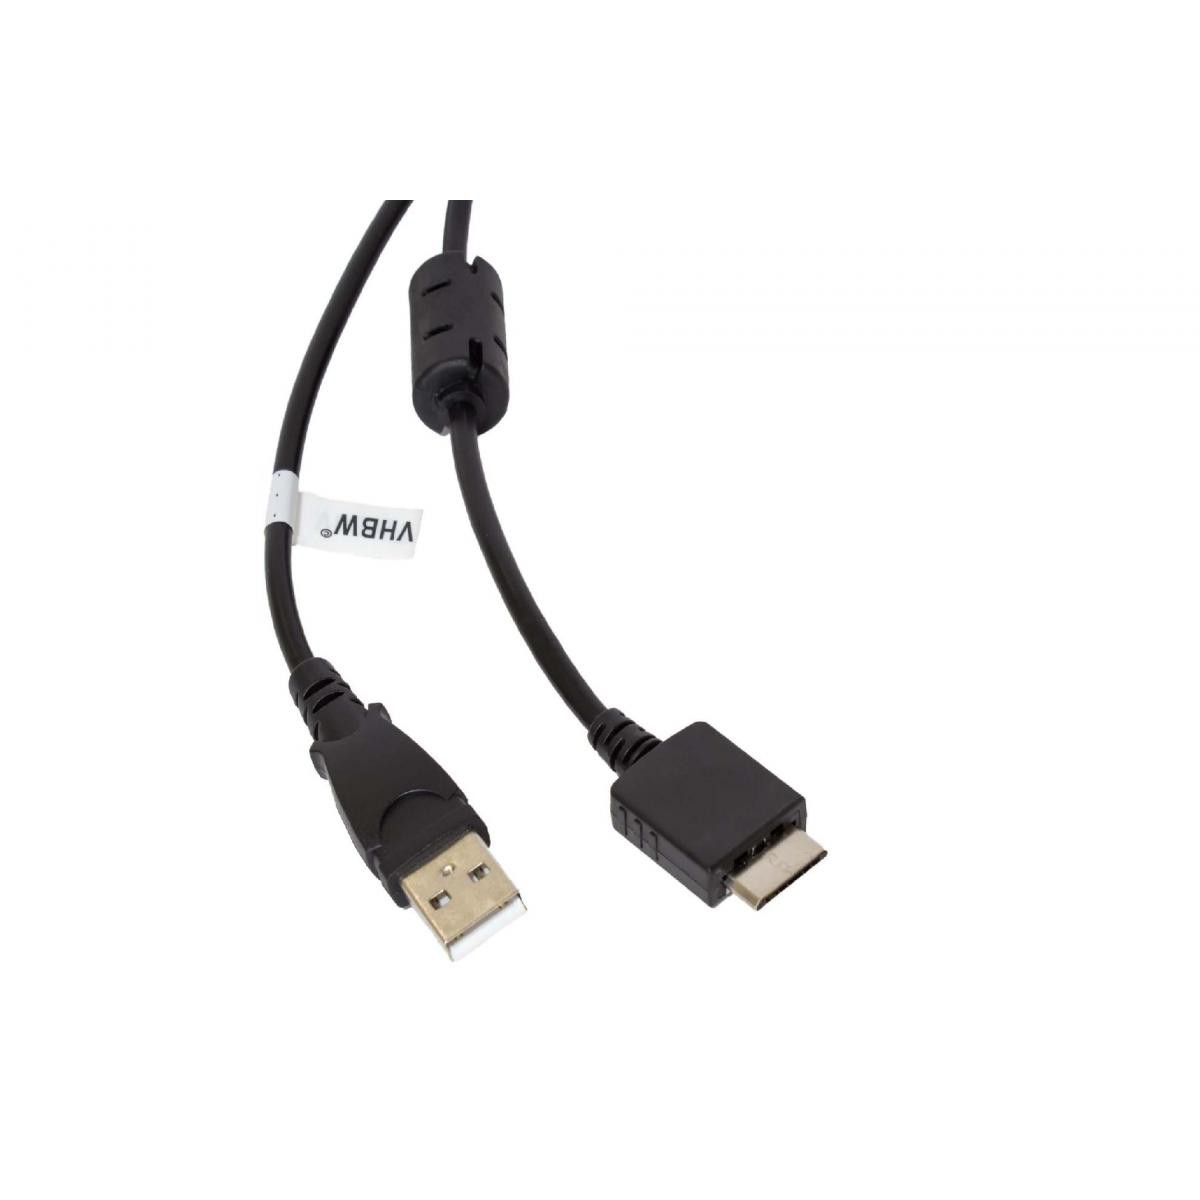 Vhbw - vhbw câble de données USB (type A sur lecteur MP3) câble de chargement compatible avec Sony Walkman NWZ-E574, NWZ-E575 lecteur MP3 - noir, 150cm - Alimentation modulaire